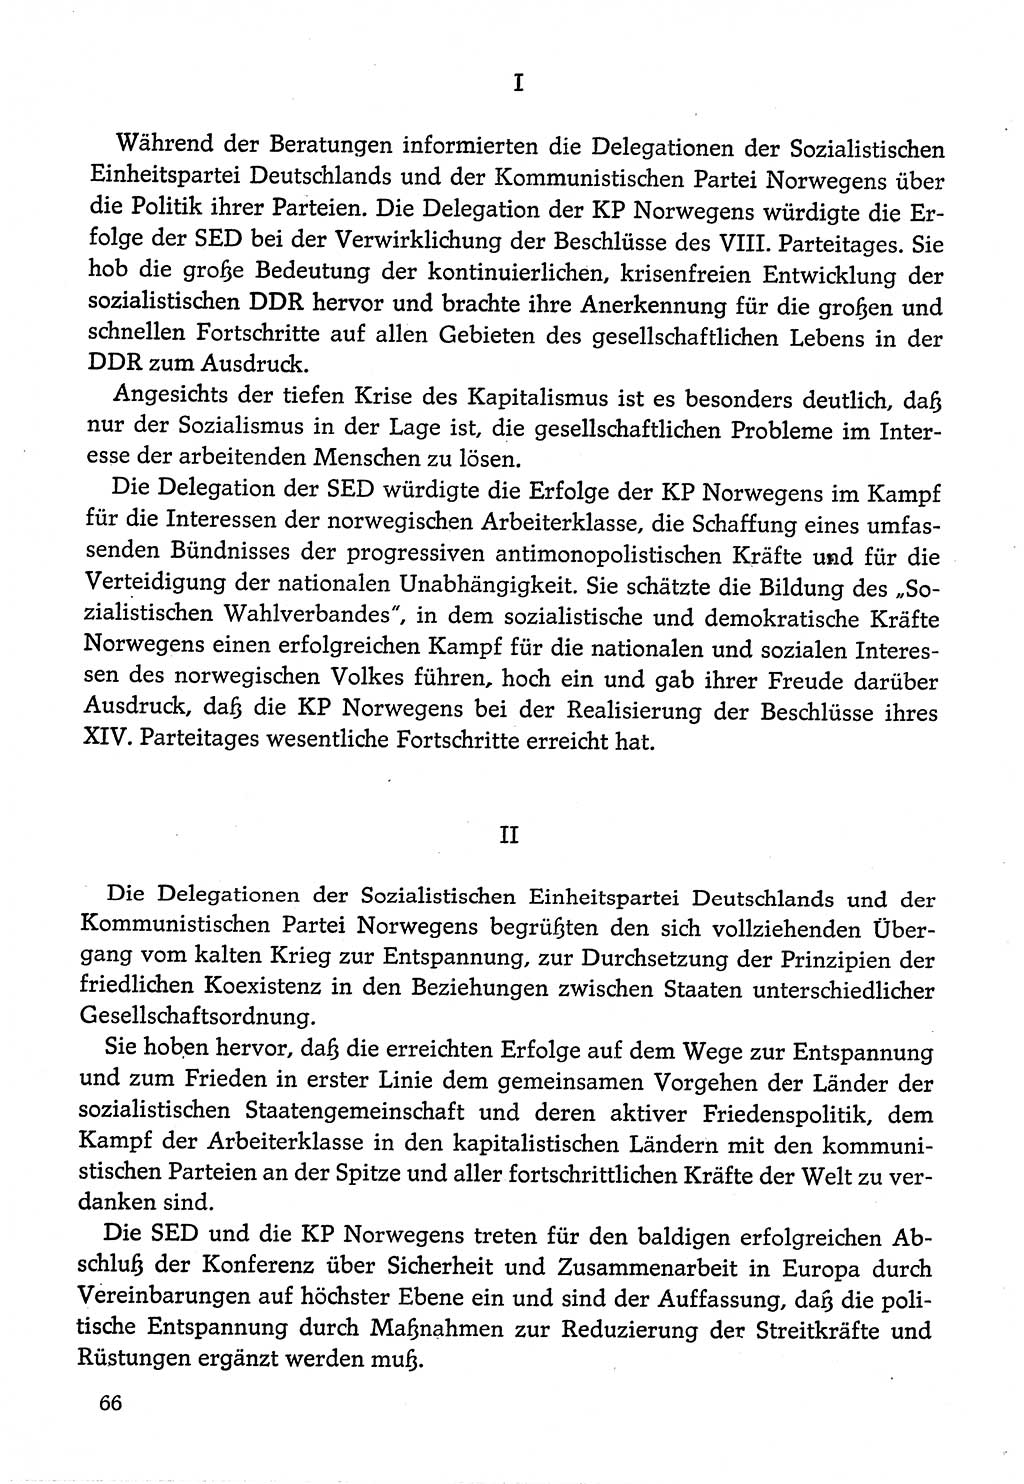 Dokumente der Sozialistischen Einheitspartei Deutschlands (SED) [Deutsche Demokratische Republik (DDR)] 1974-1975, Seite 66 (Dok. SED DDR 1978, Bd. ⅩⅤ, S. 66)